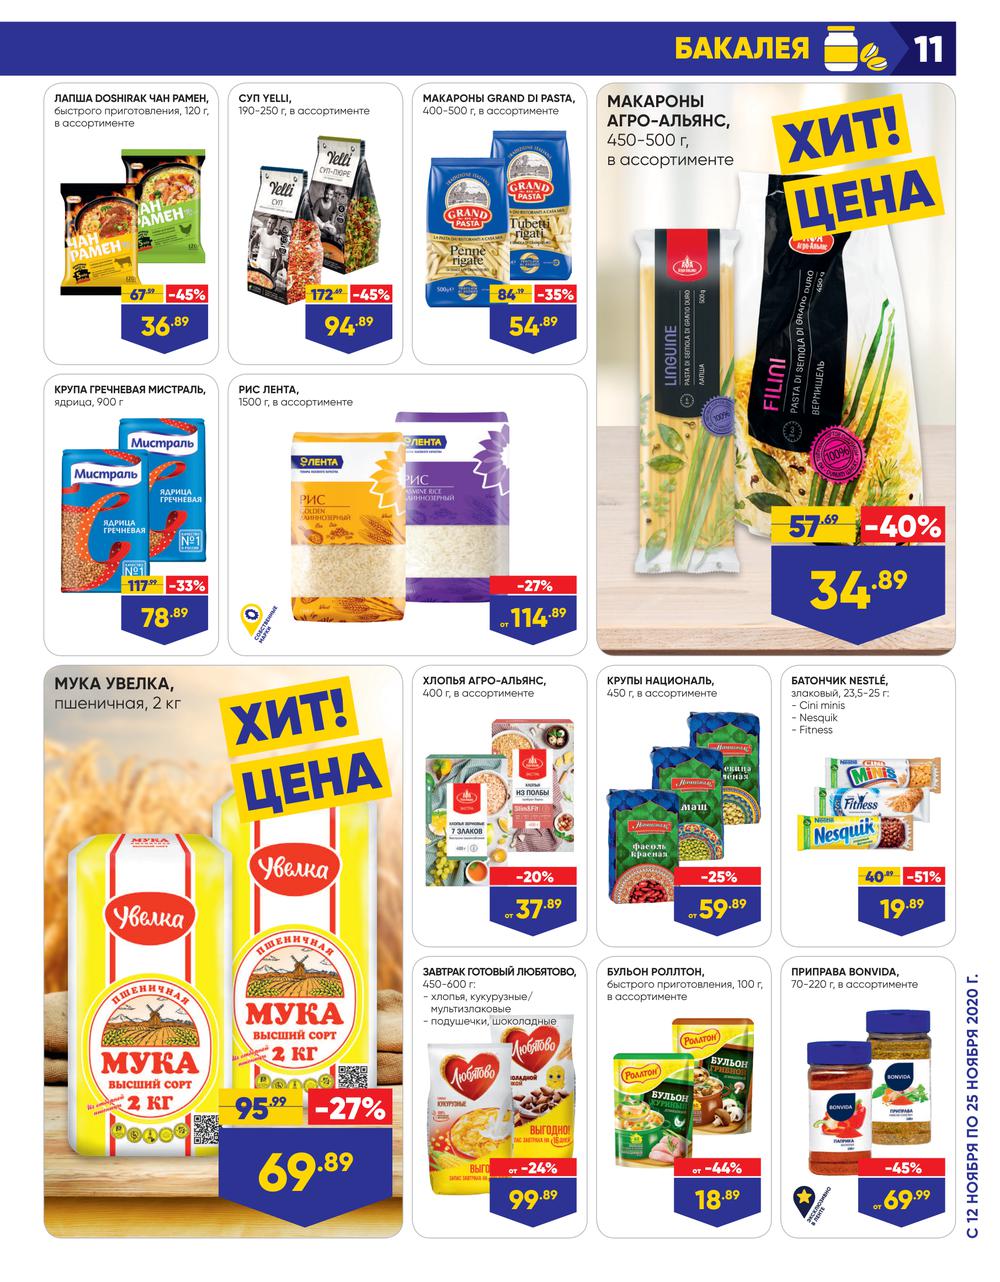 Челси челябинск официальный сайт каталог товаров обои цены